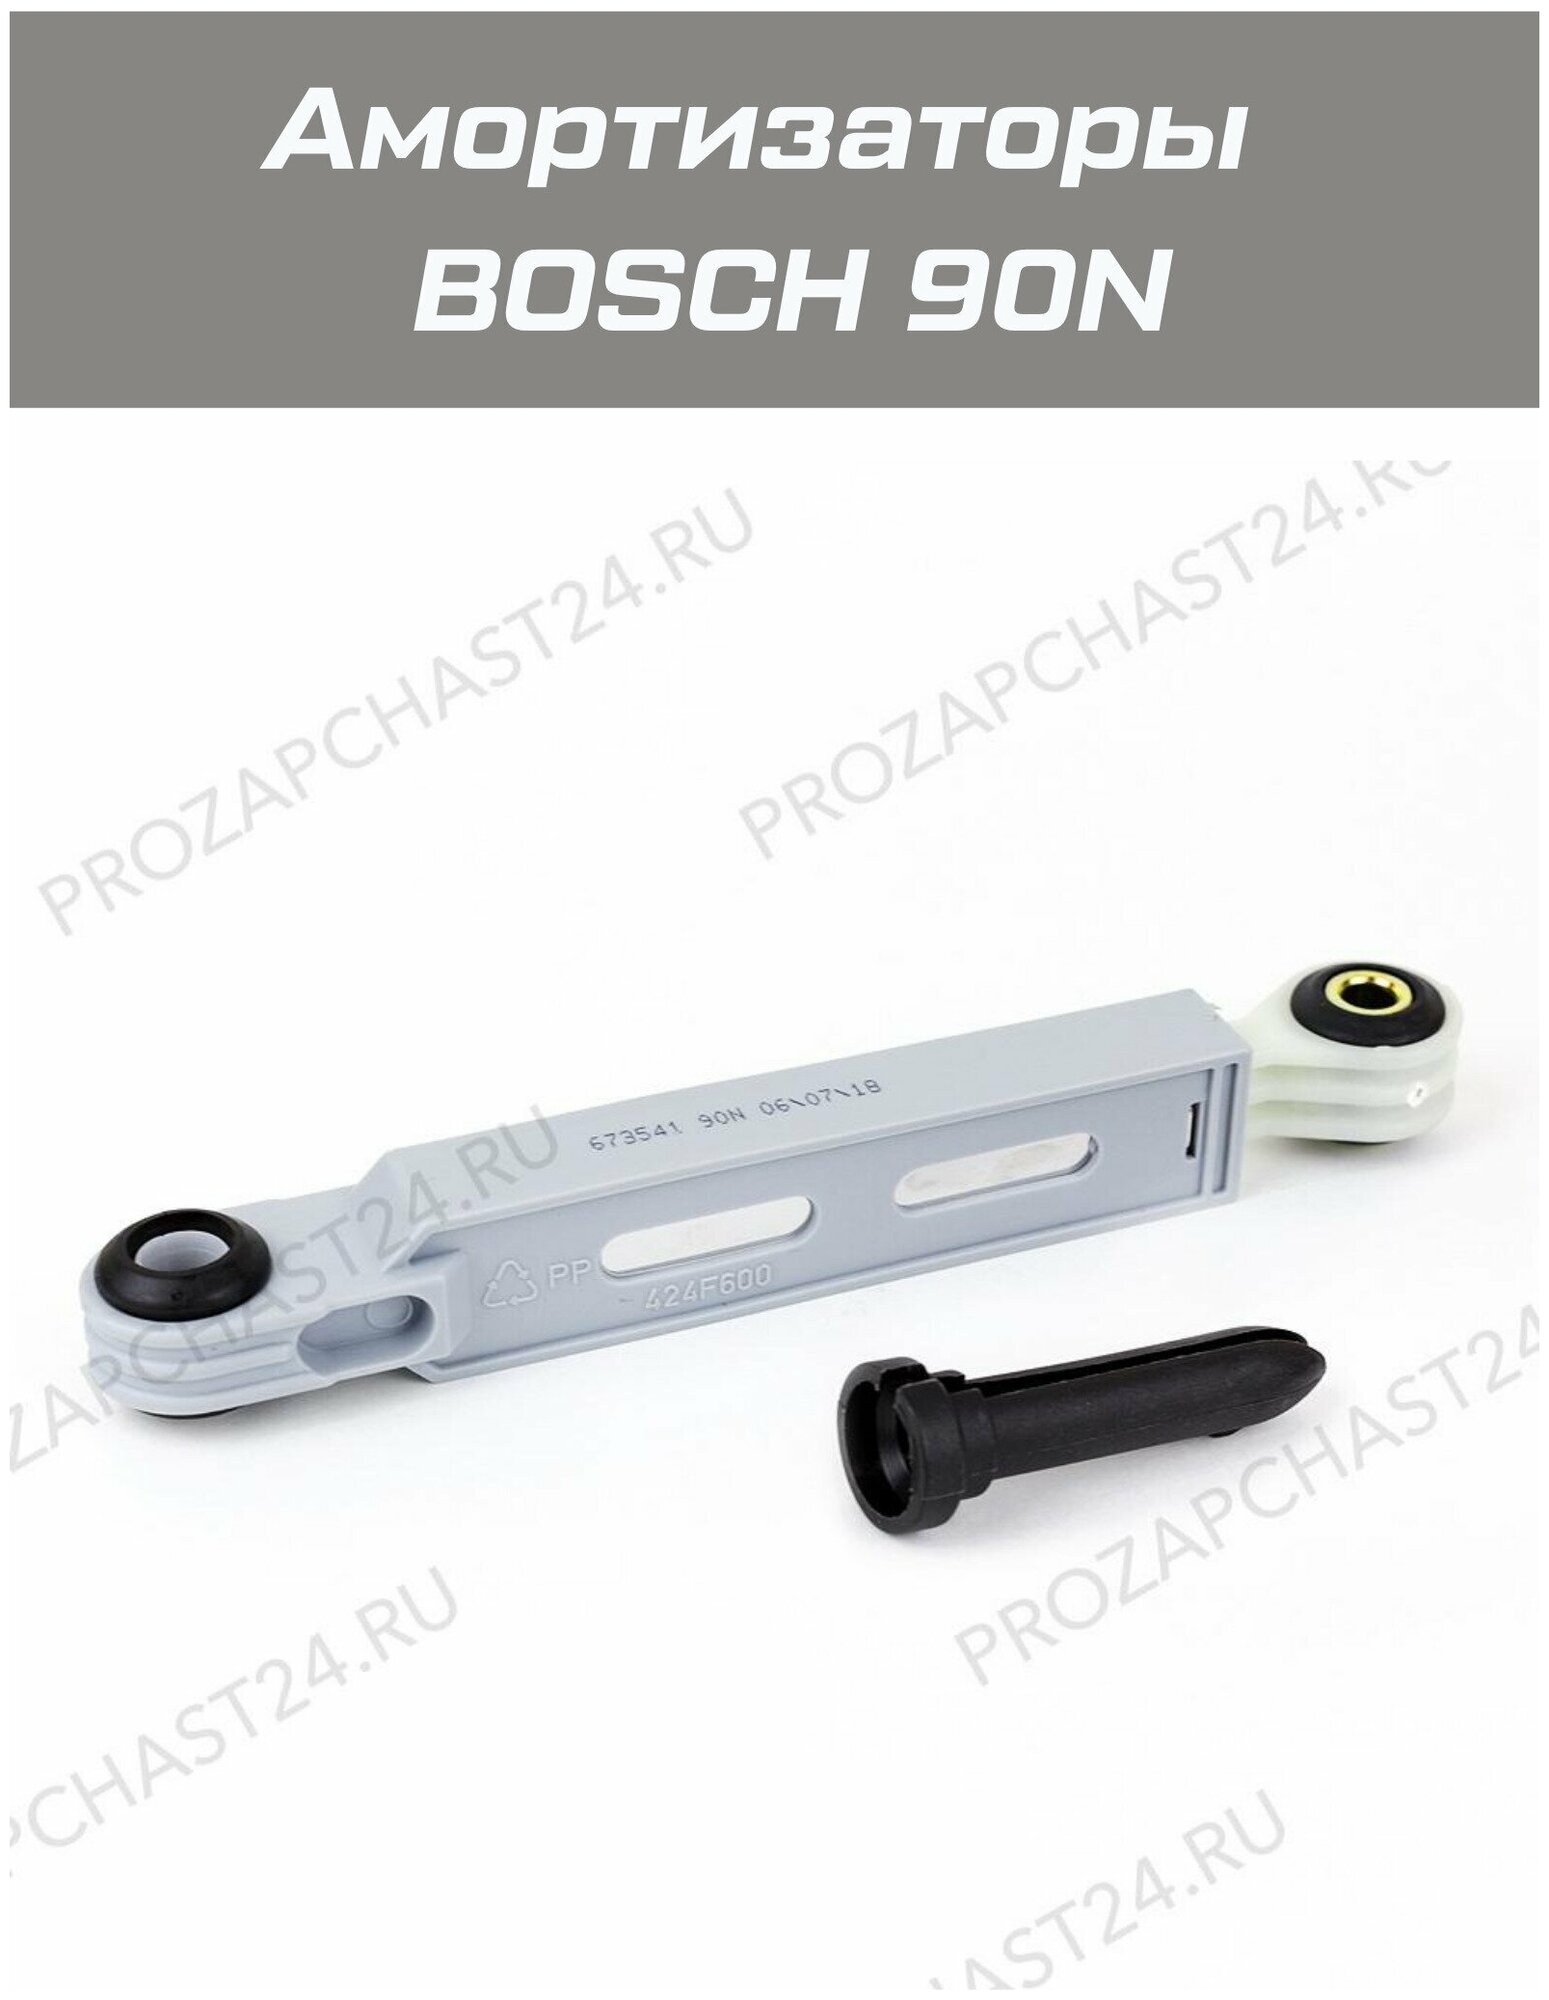 Комплект амортизаторов для стиральной машины Bosch/Siemens 673541 660865 жесткость 90N (2 штуки)